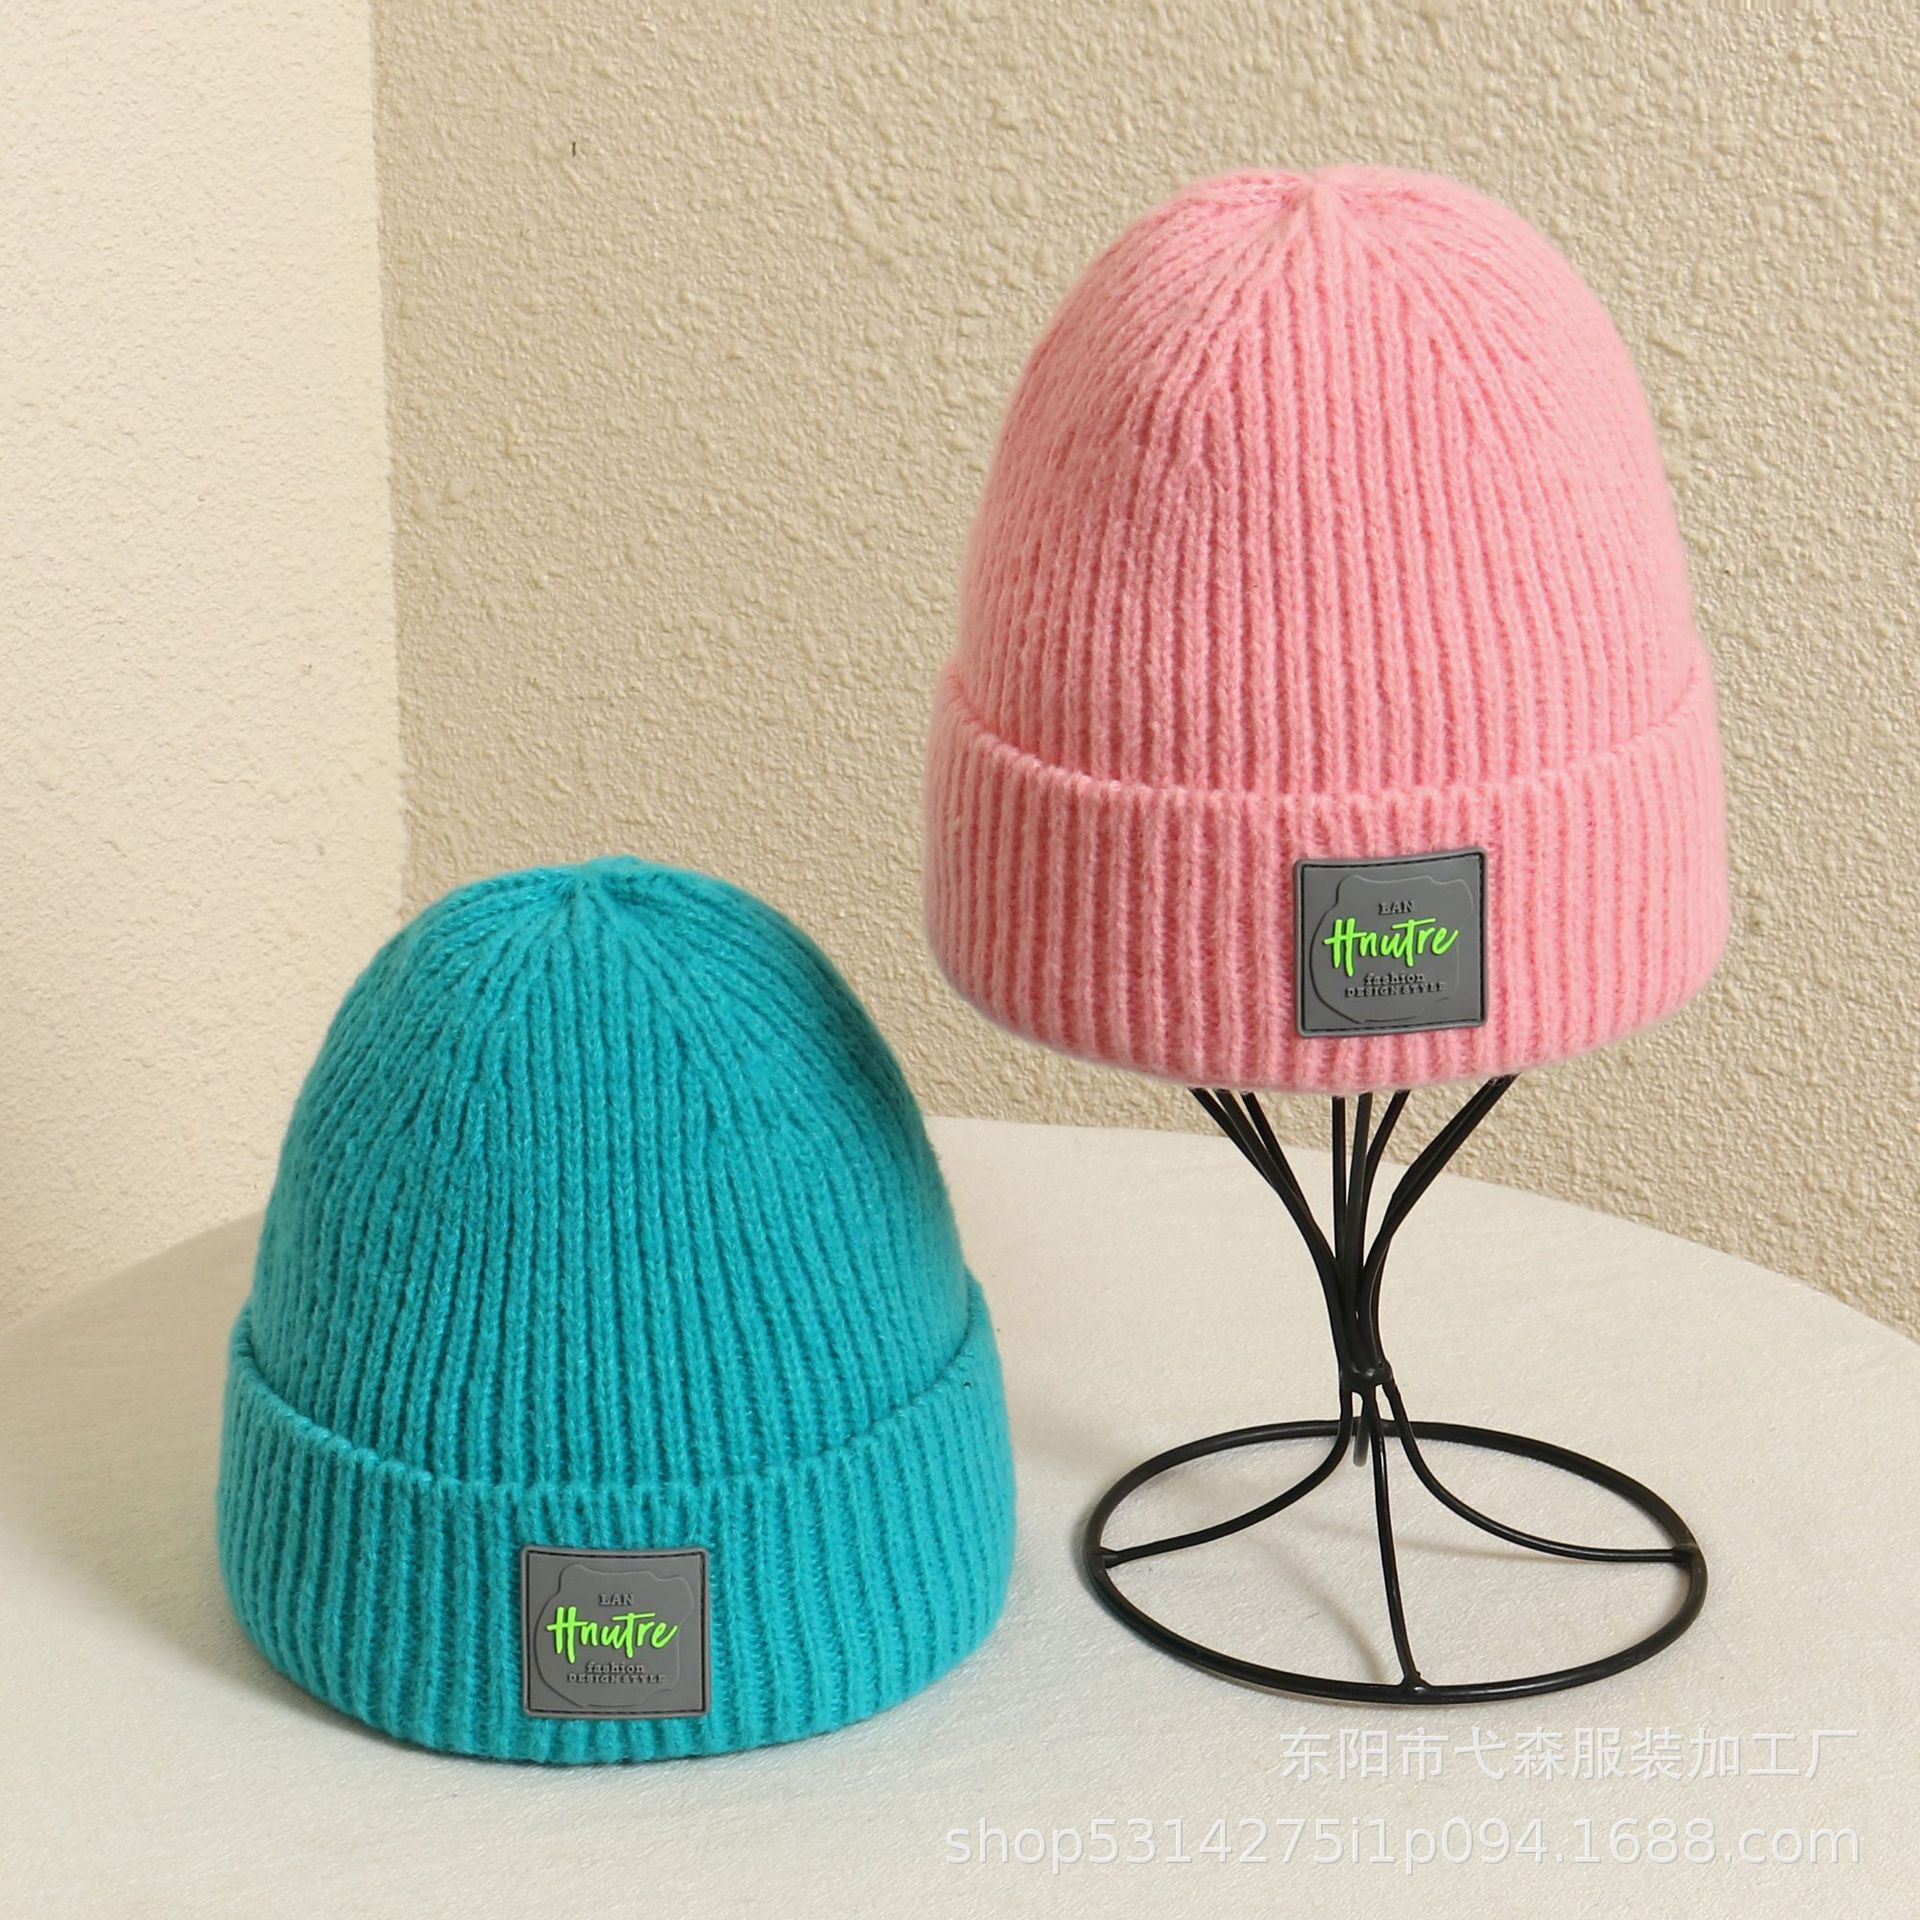 2021 female cold hat hair cap warm hat men's dome knit hat basin cap autumn winter hat